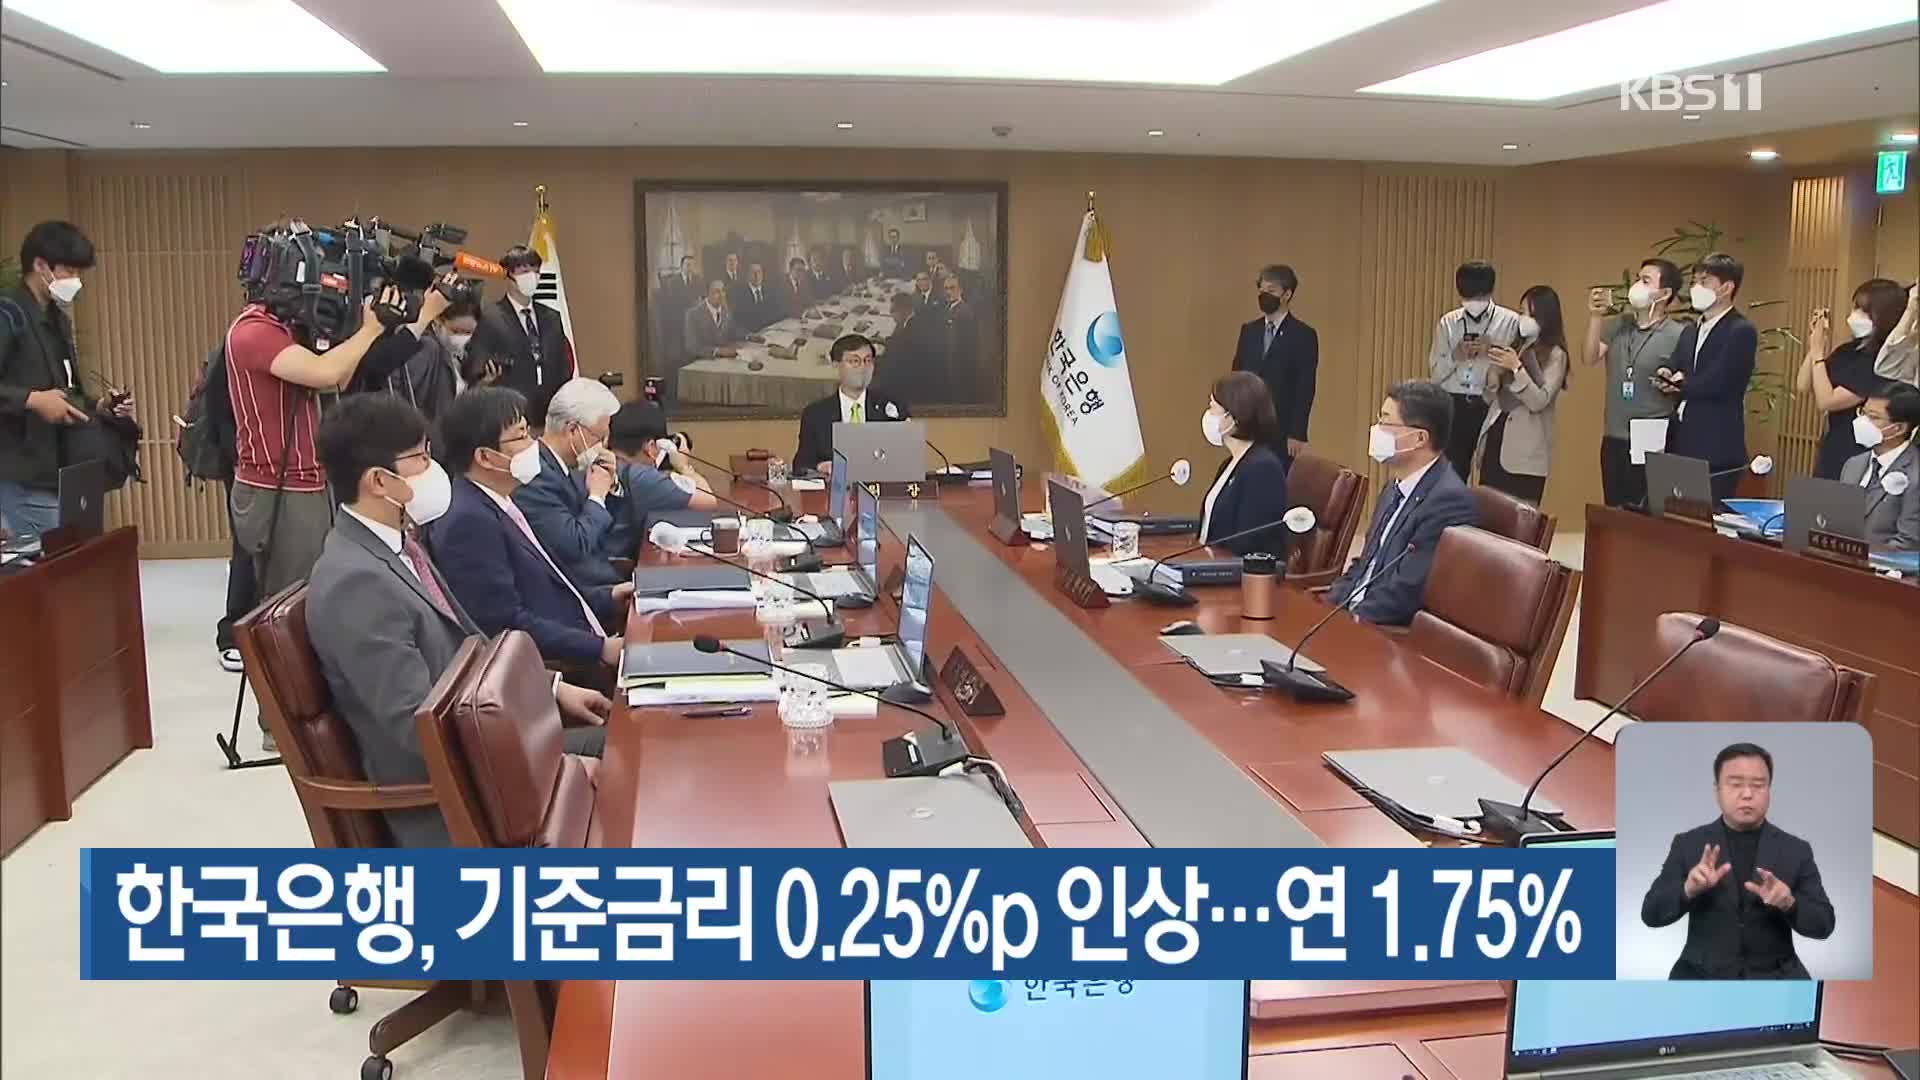 한국은행, 기준금리 0.25%p 인상…연 1.75%